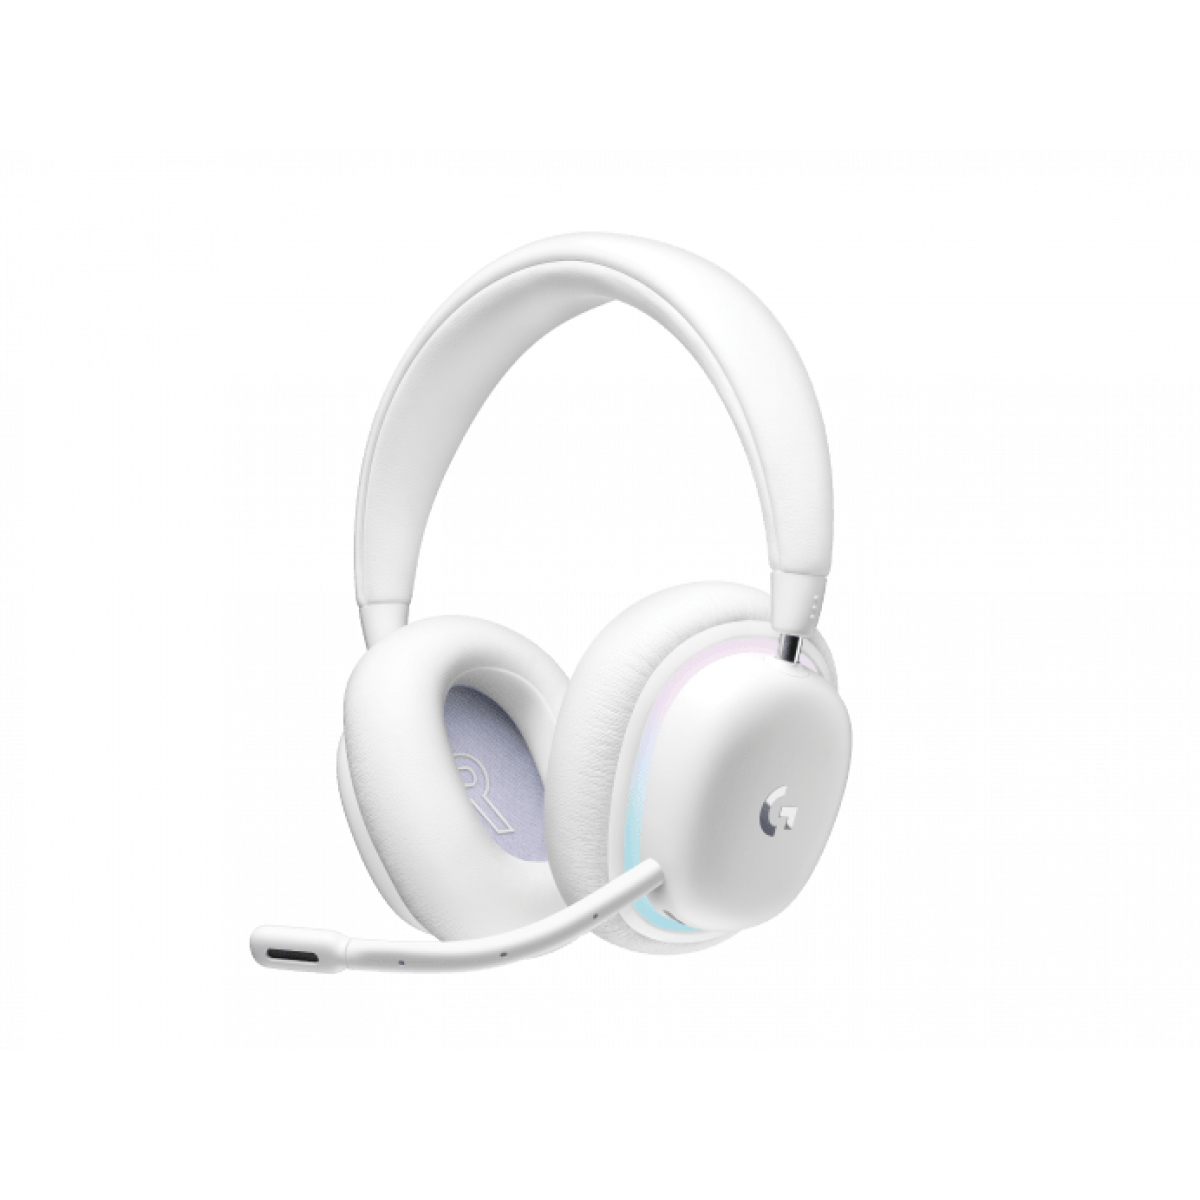 Tai nghe Logitech Aurora G735 Off White | Bluetooth